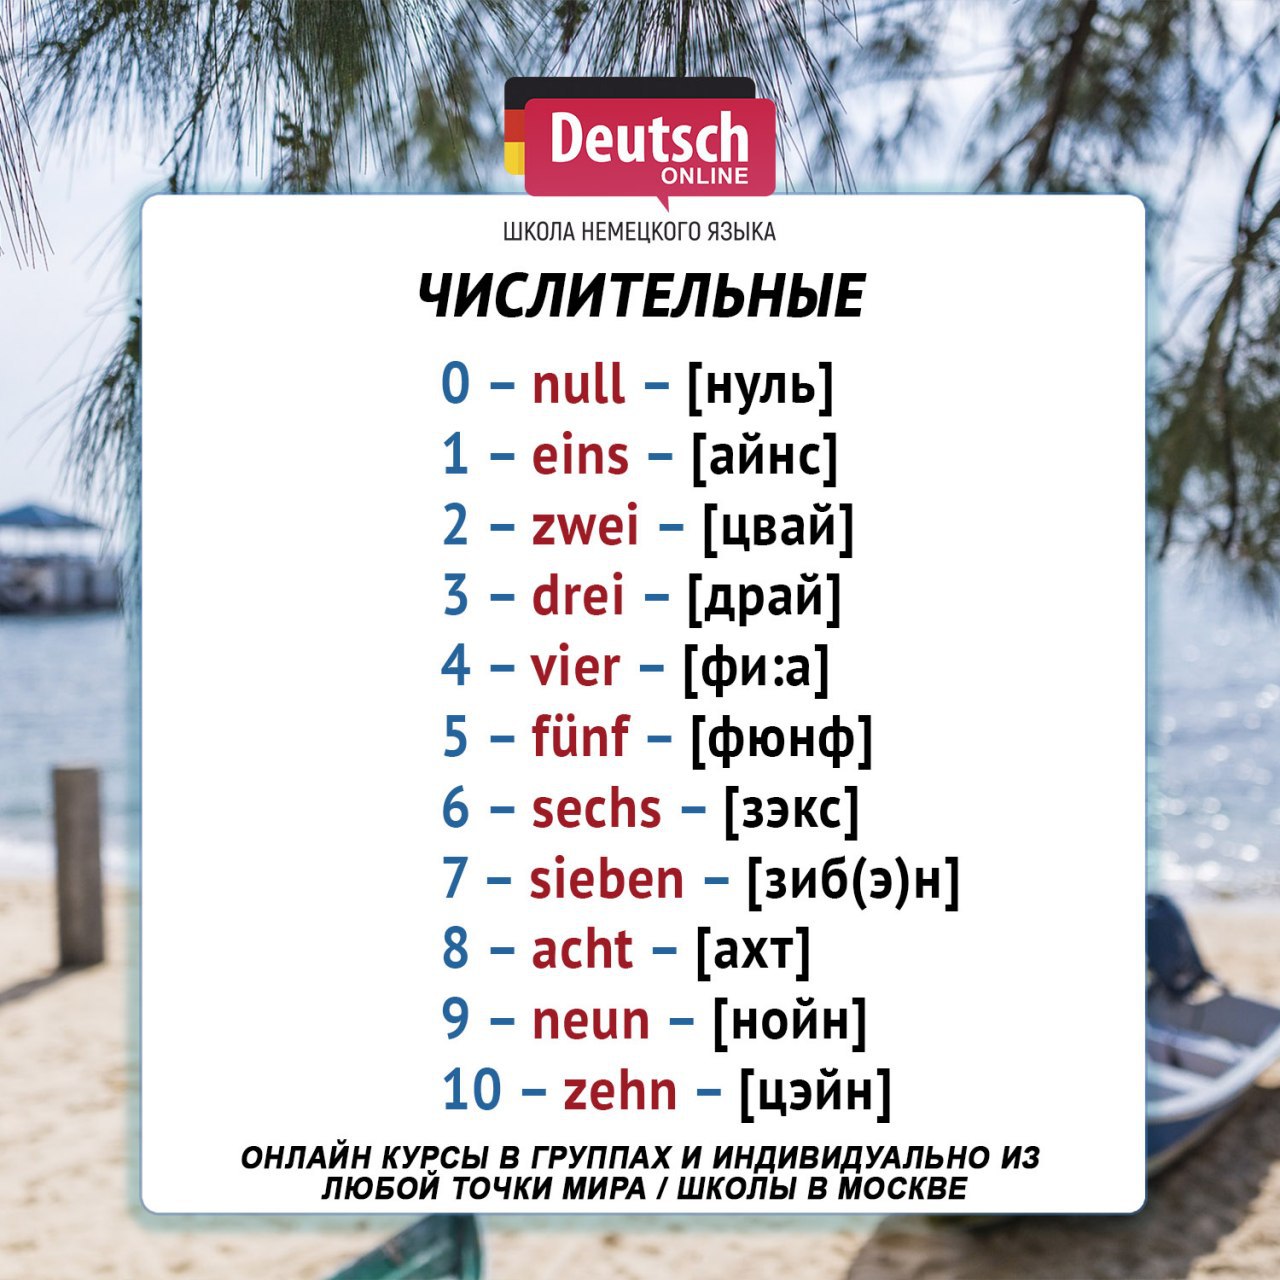 Месяцы на немецком языке с произношением